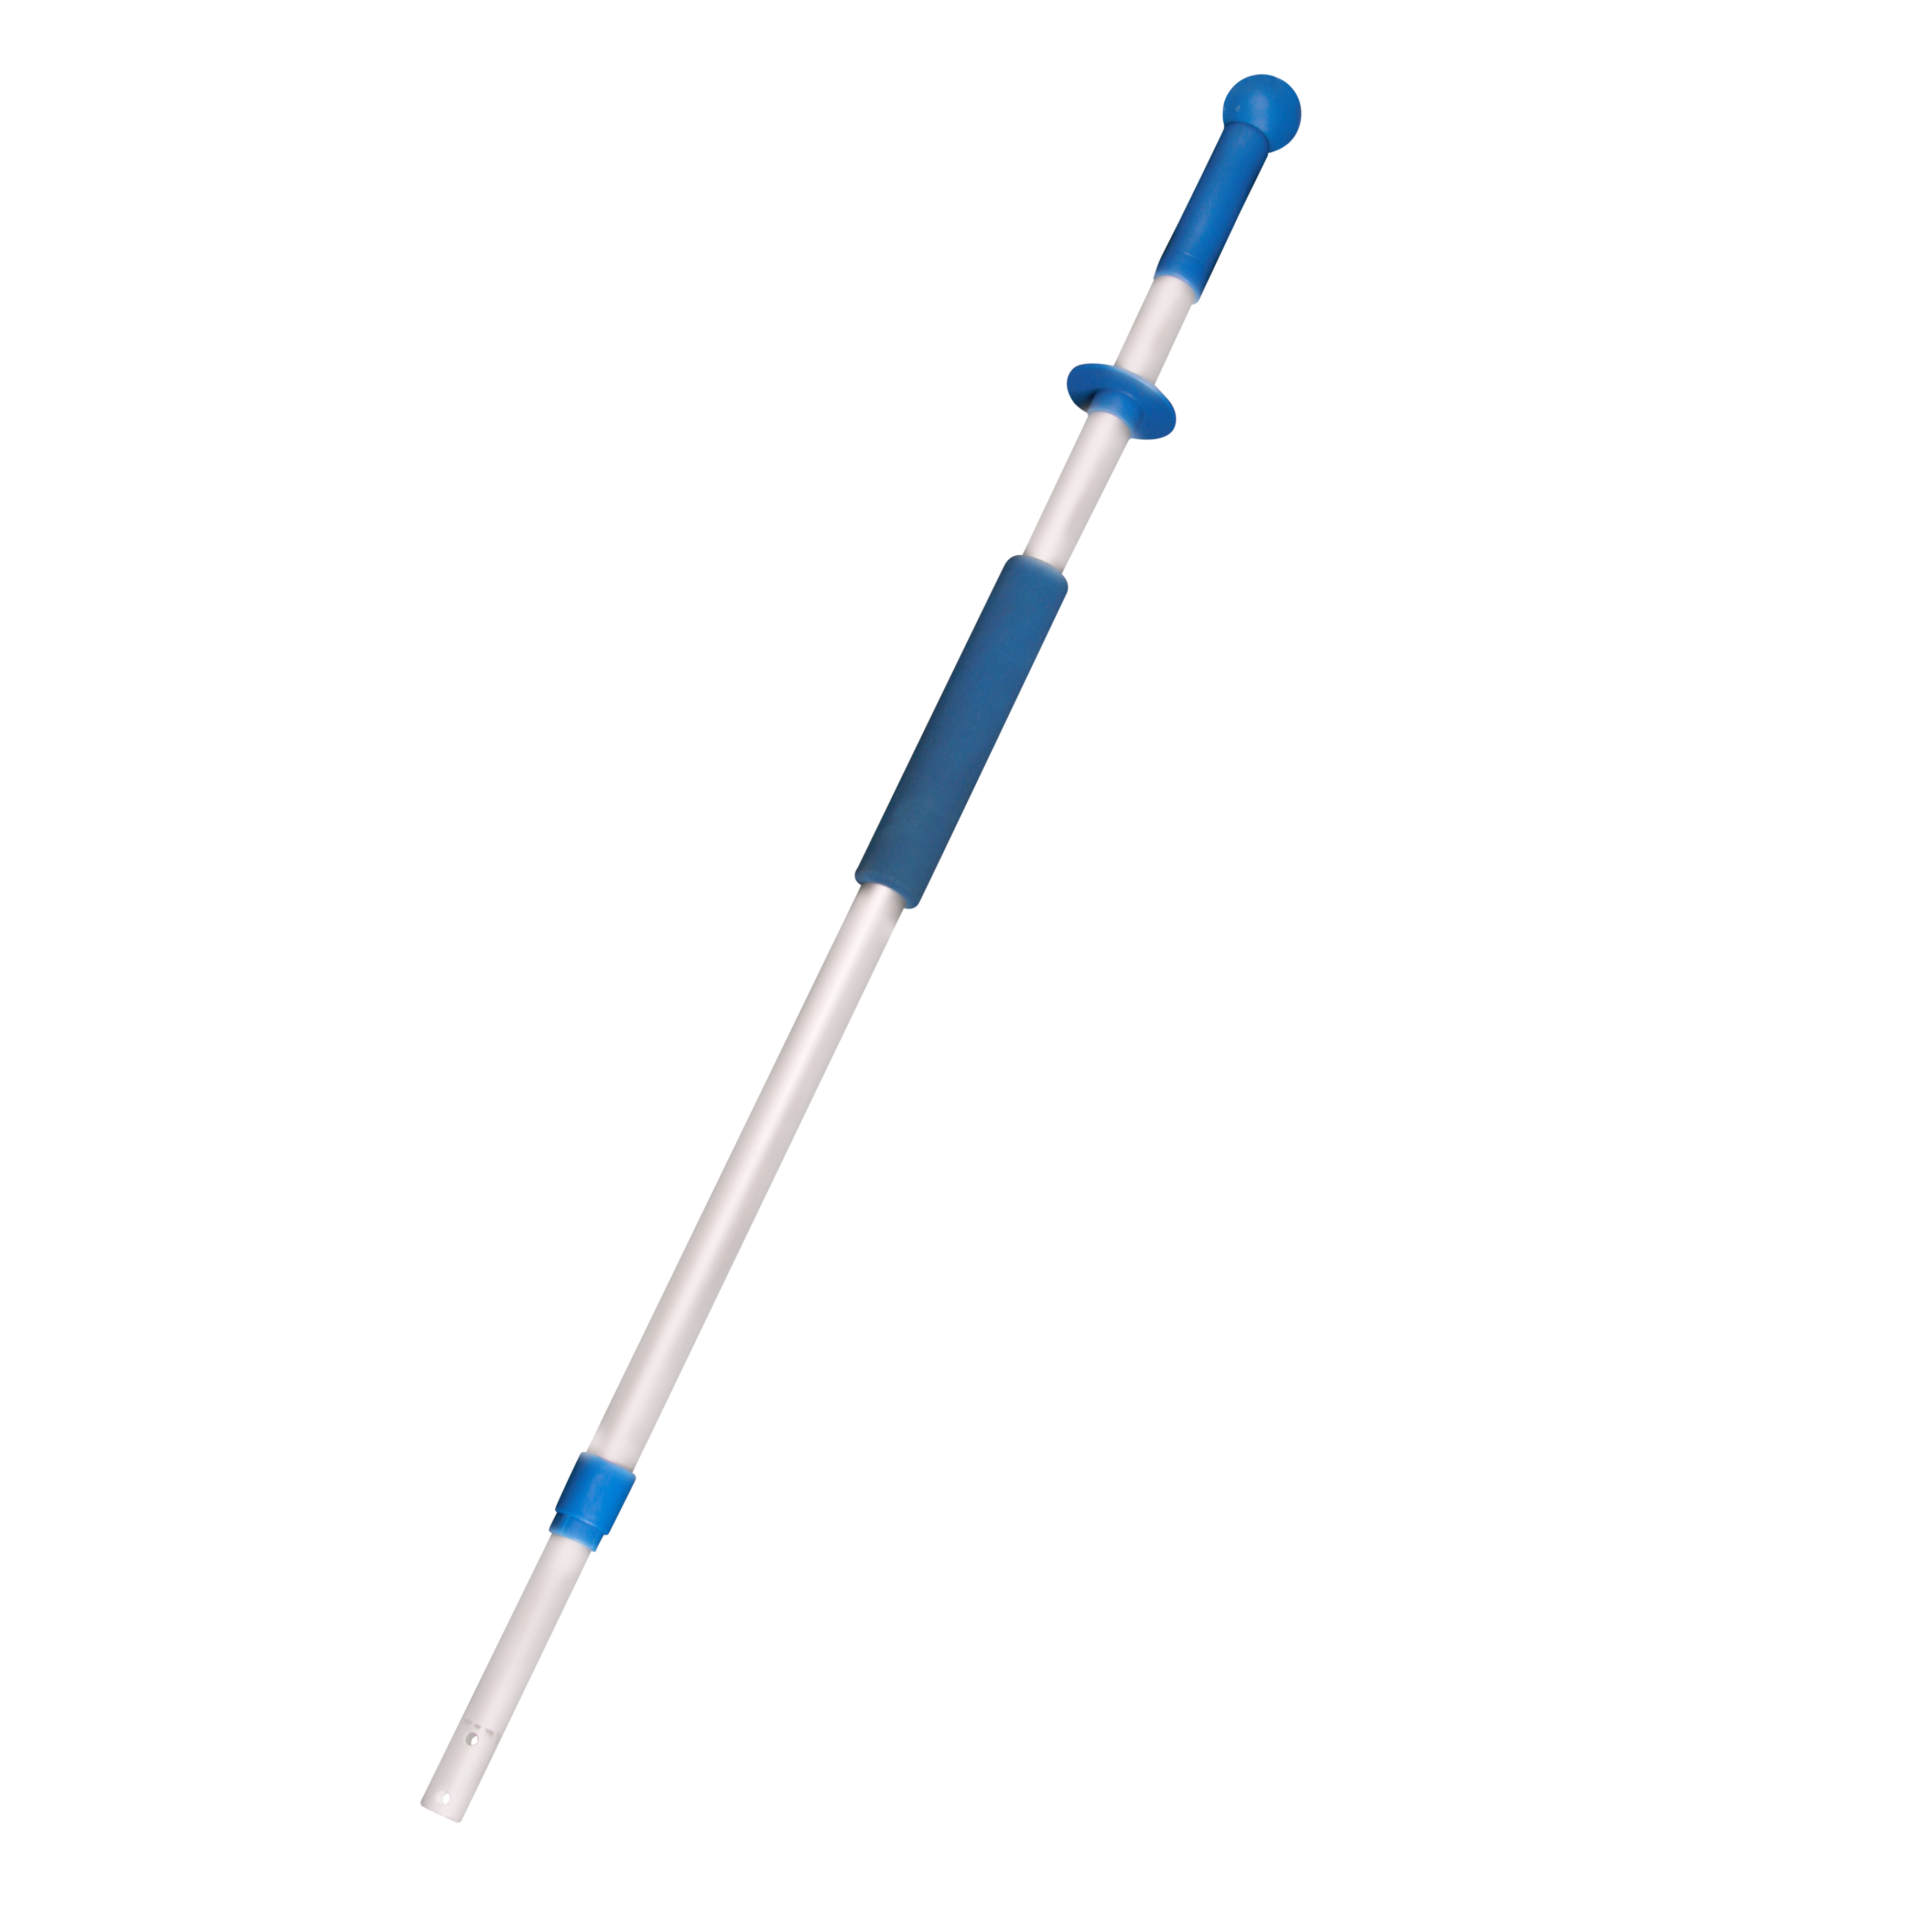 Teleskopstiel ausziehbar, Aluminium, blau, blau/silber, 100 - 180 cm